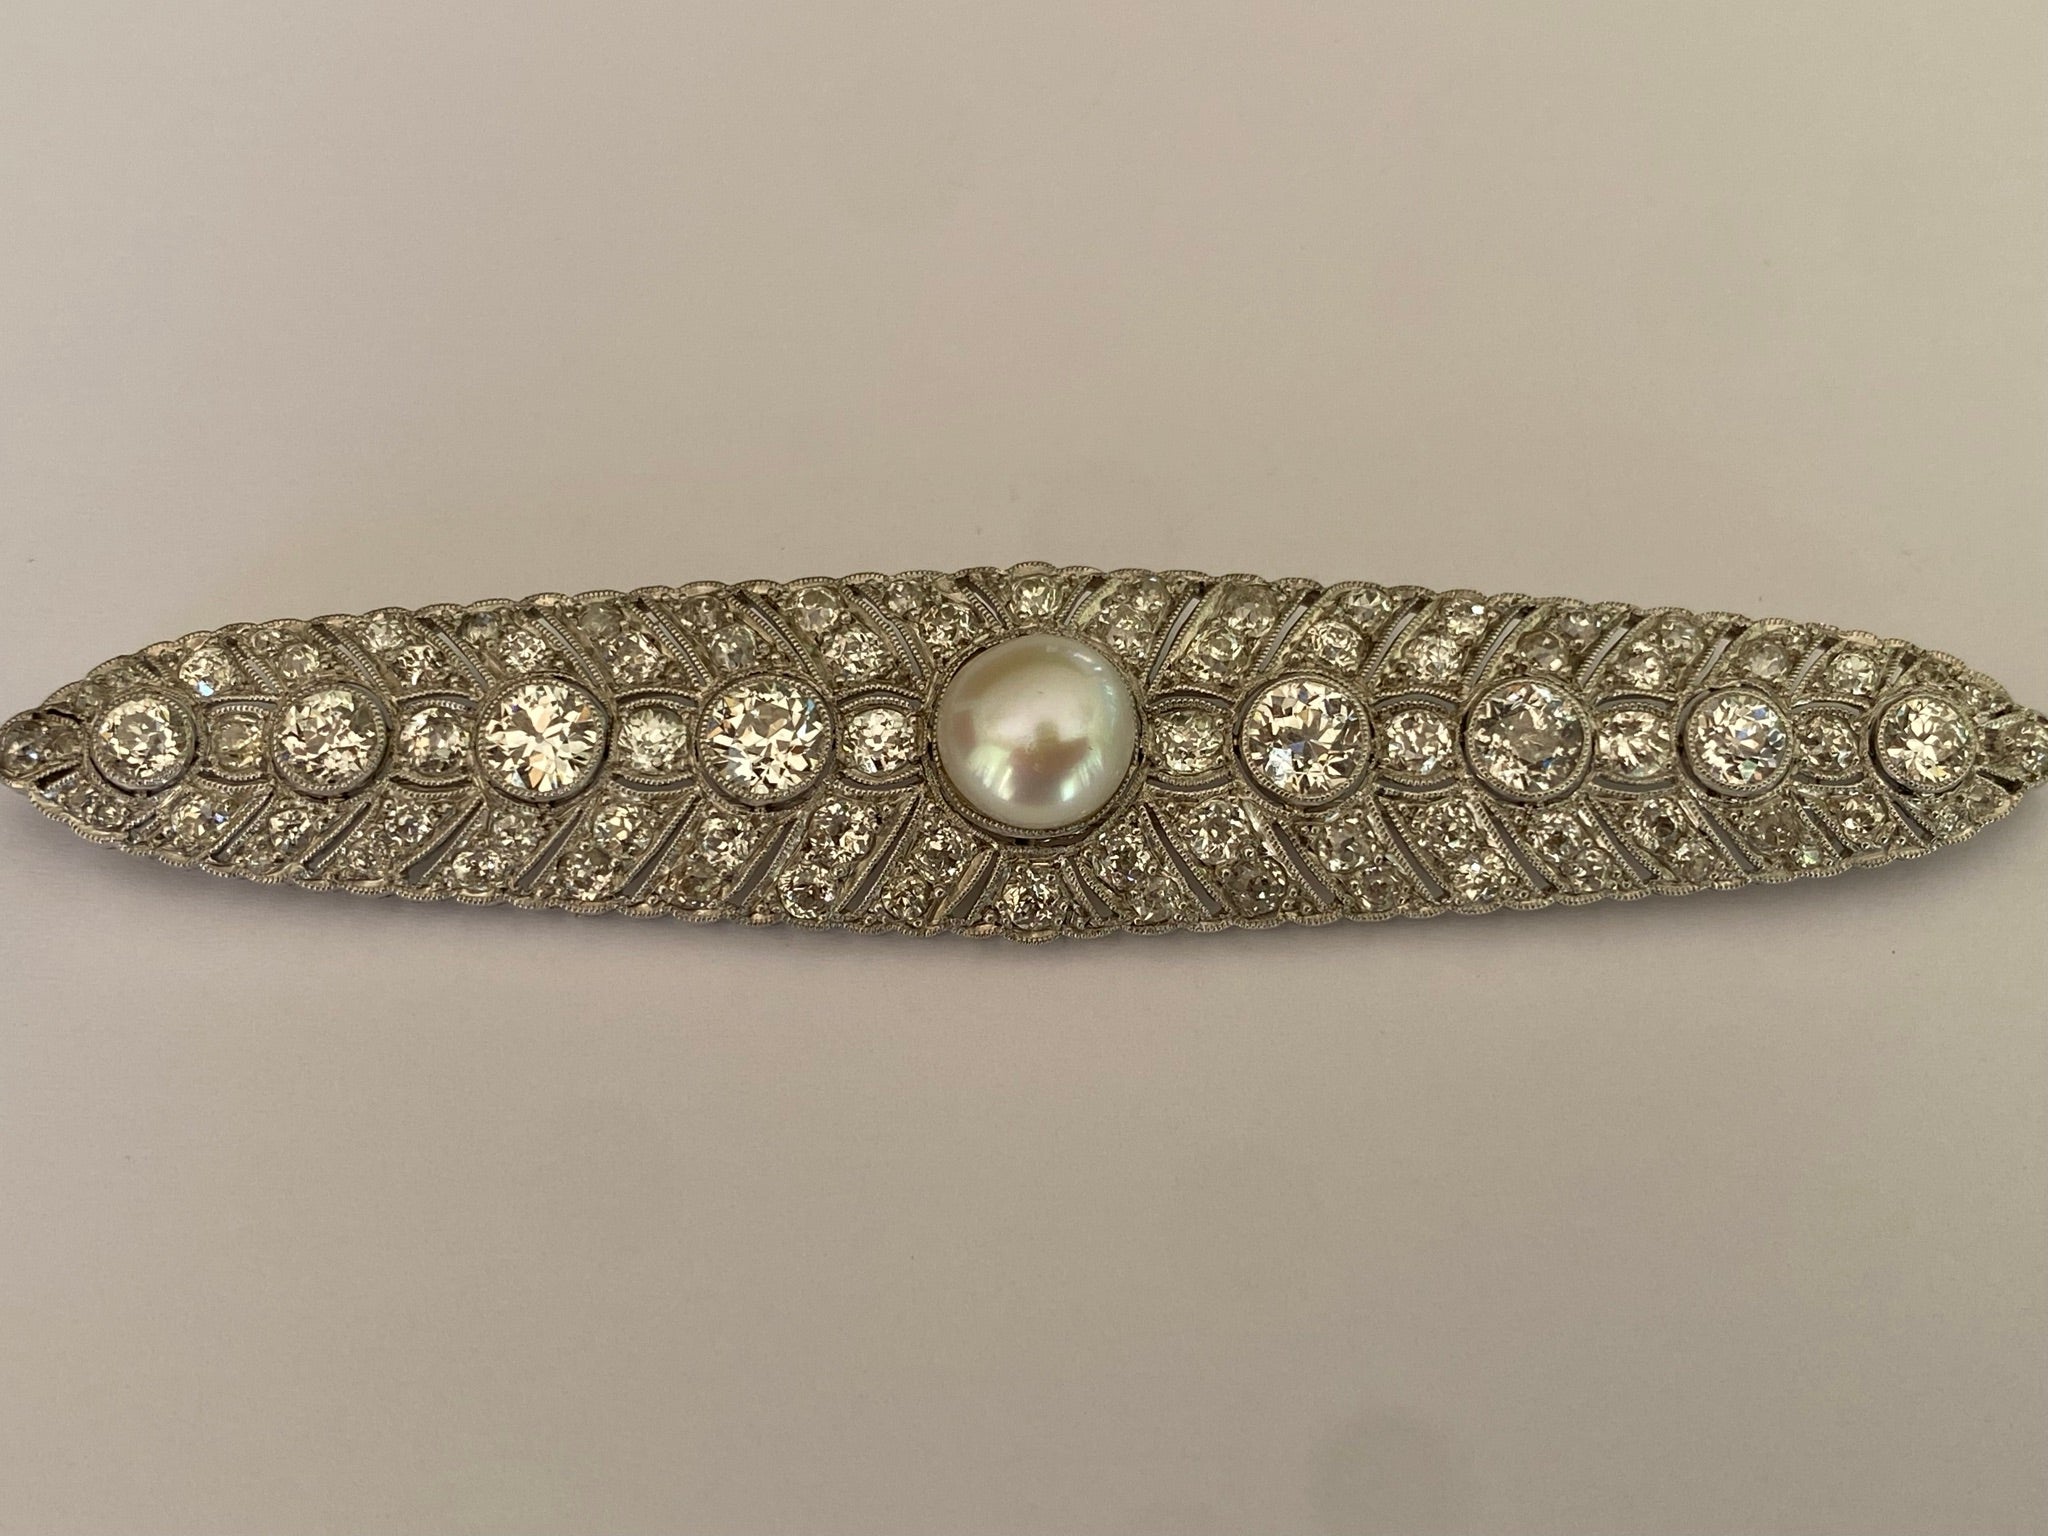 Diese exquisite, in den 1920er Jahren aus Platin gefertigte Art-Déco-Brosche zeigt eine 9 mm große, blasenförmige weiße Perle, die in der Mitte einer Reihe von acht Diamanten mit altem europäischem Schliff von insgesamt ca. 4,00 Karat sitzt. Sie ist